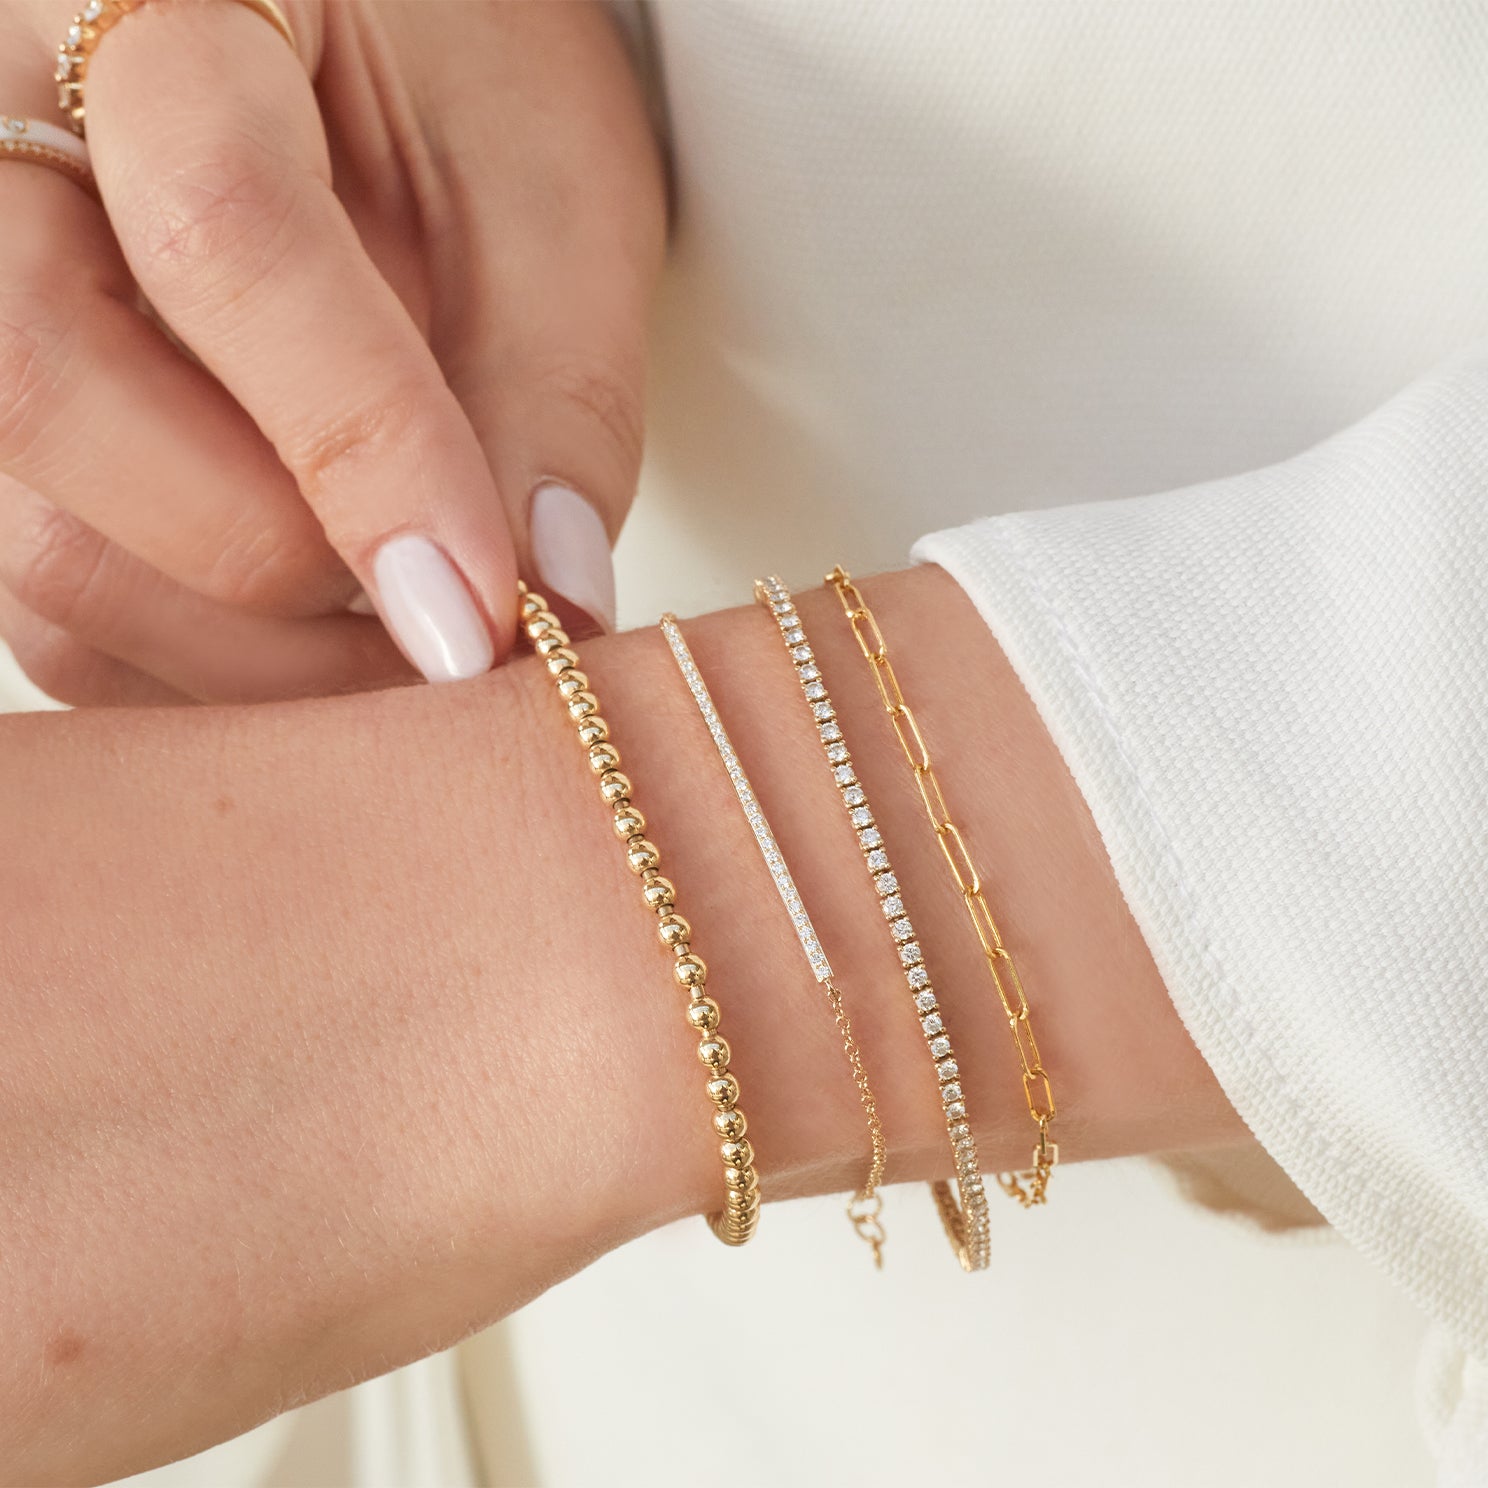 Gold Beaded Bracelet Set | Handmade Bracelet | Elastic Bracelet | Shiny  Bead Stacking Bracelet | Gold Jewelry | Unisex Gift